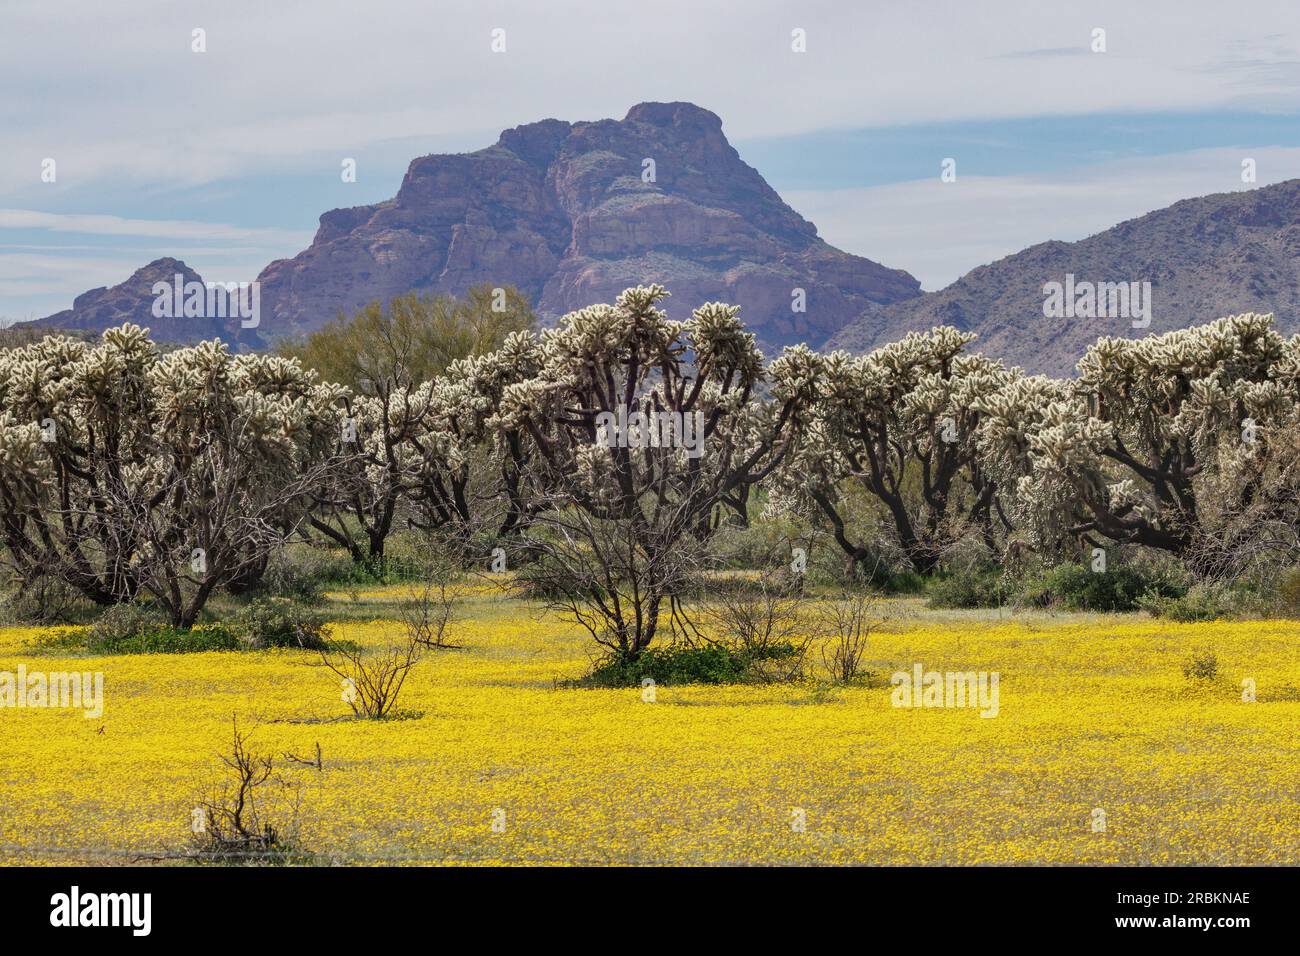 Colla de oso de peluche, Cholla saltando, Colla de plata (Opuntia bigelovii, Cylindropuntia bigelovii), en el desierto de Sonora con alfombra de flores amarillas, EE.UU., Foto de stock